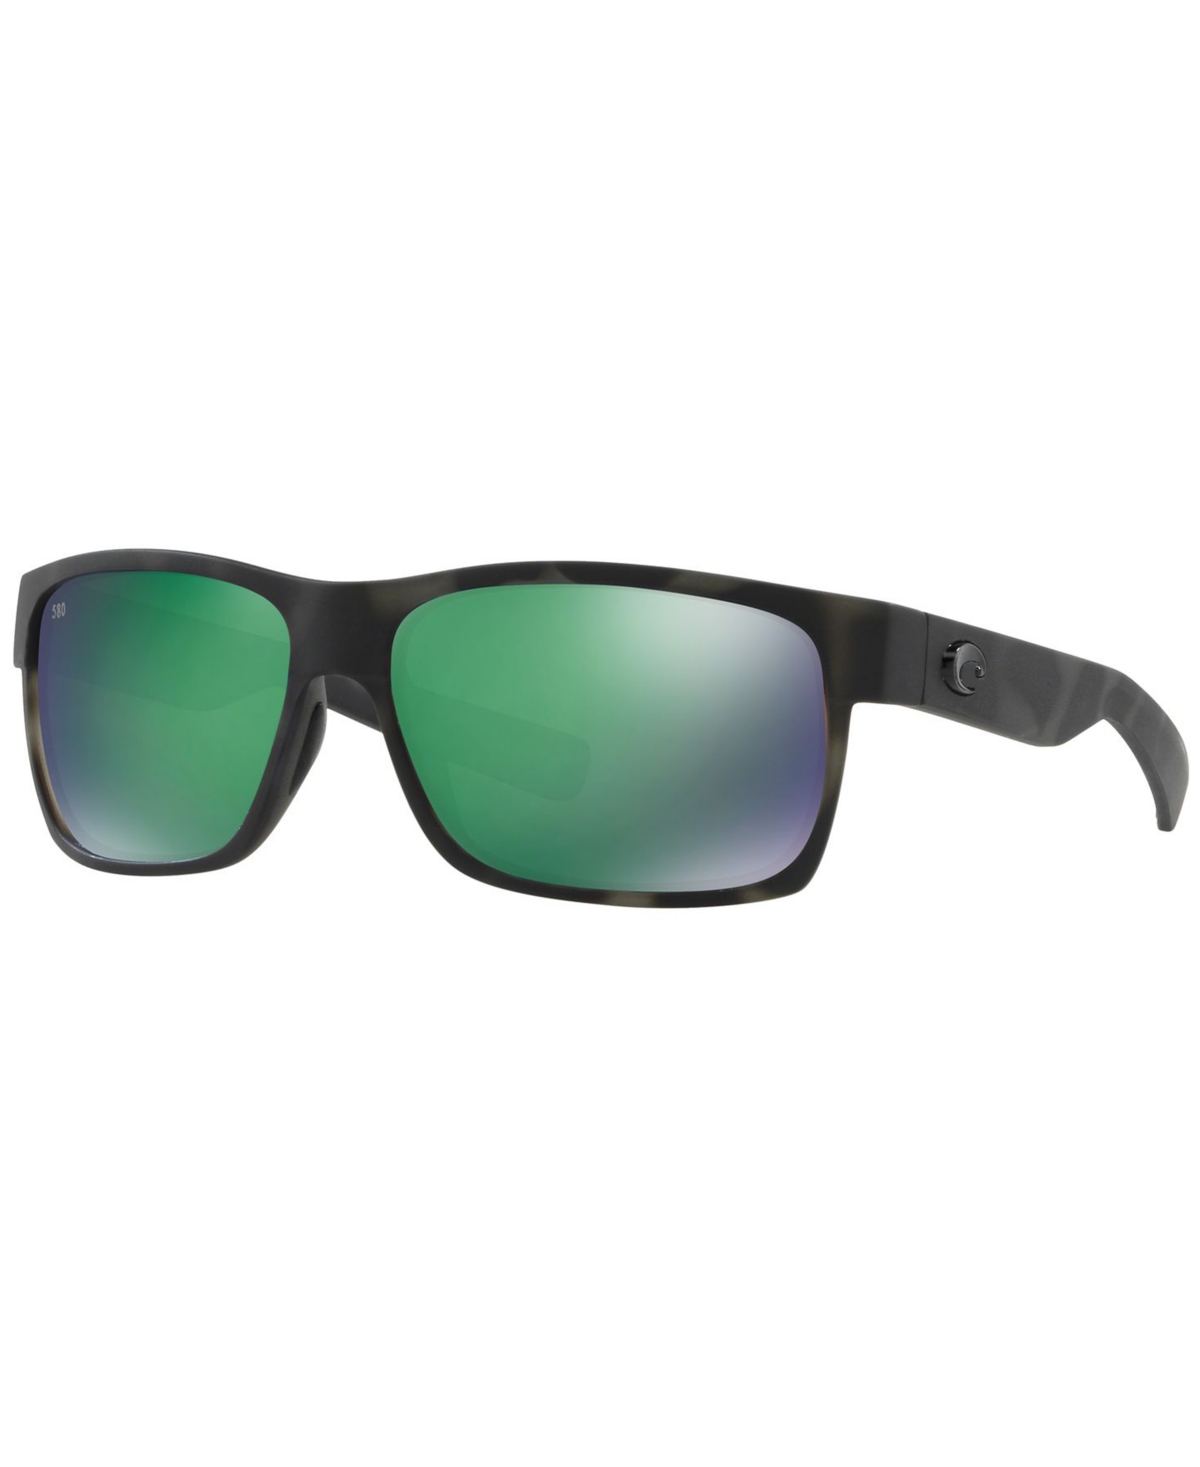 Costa Del Mar Polarized Sunglasses, Half Moon In Black,green Mirror